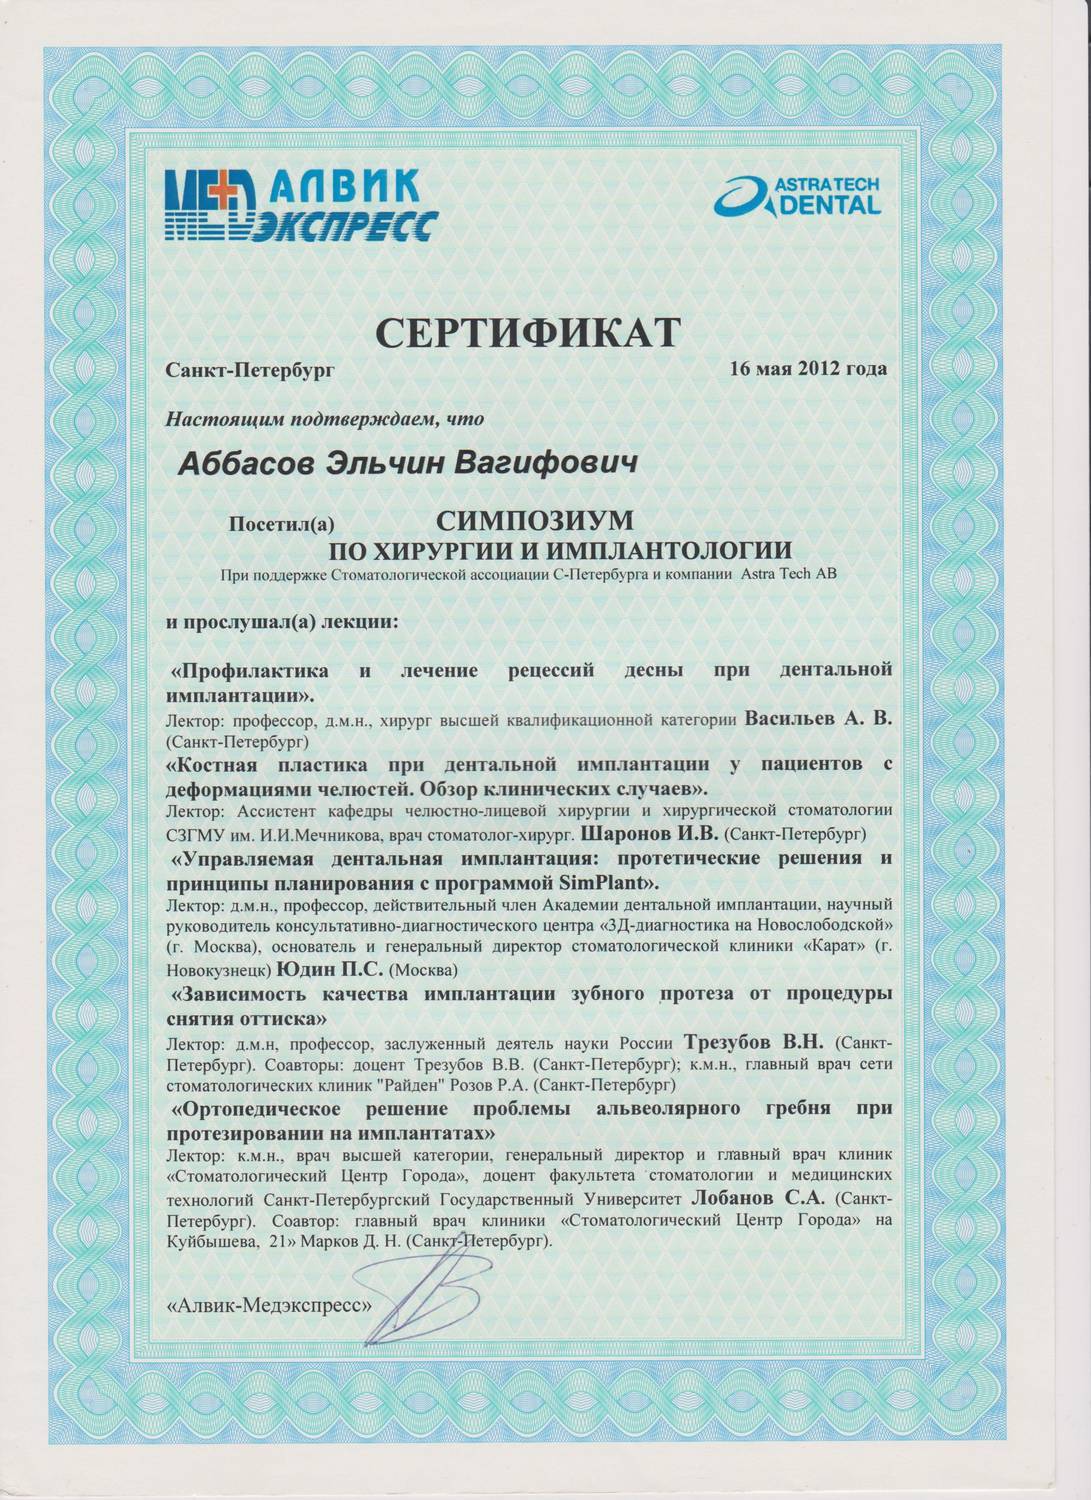 Сертификация санкт петербург. Сертификат в Санкт Петербург. Документы для стоматологии.